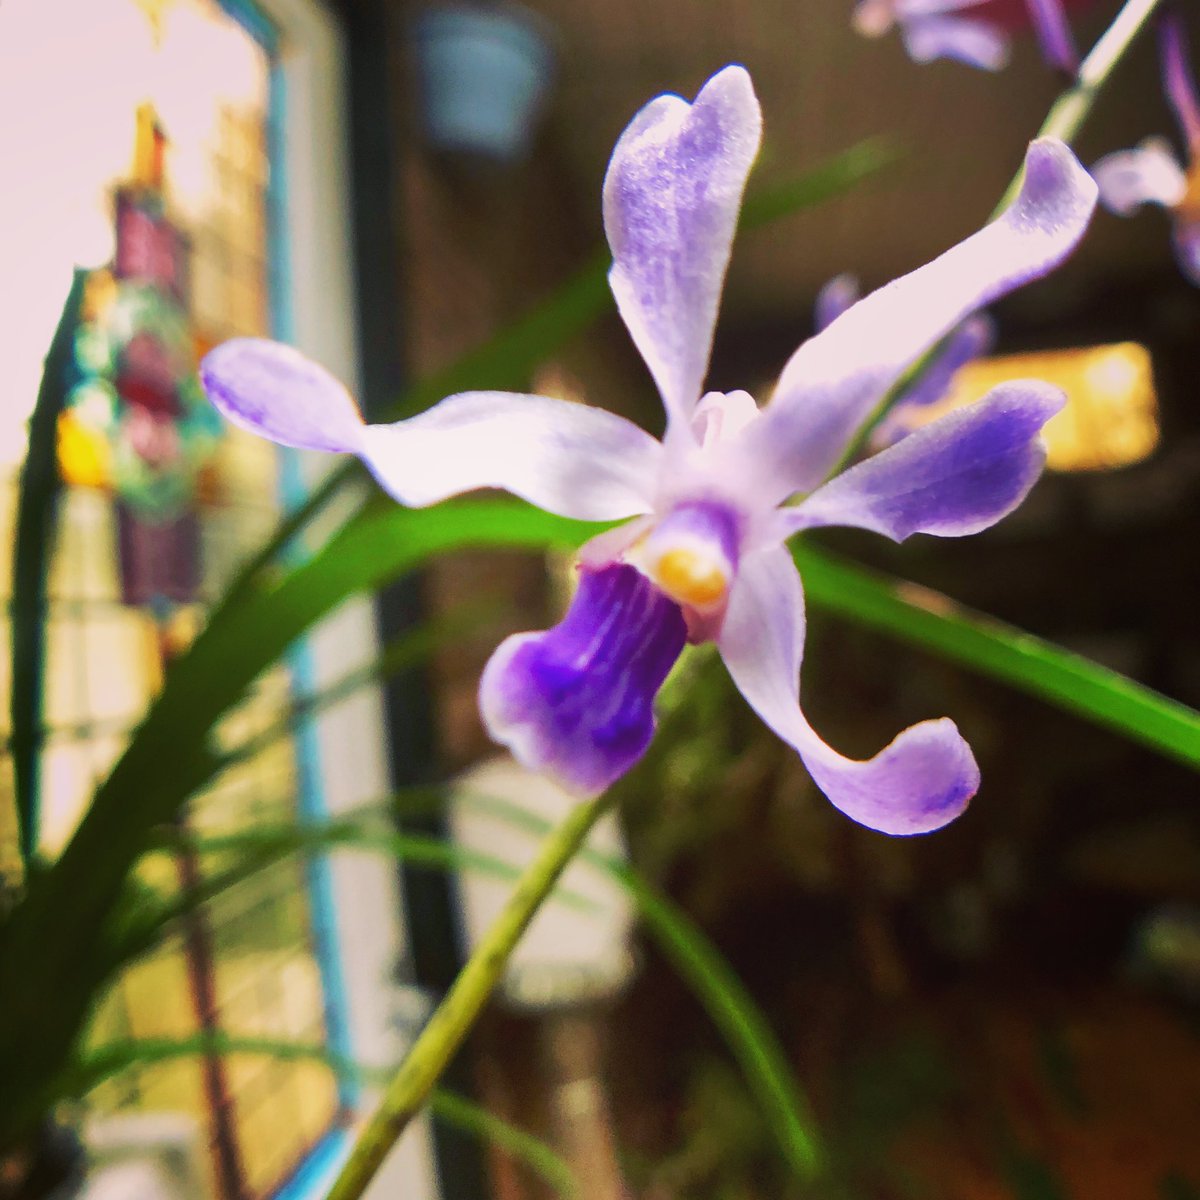 My Vanda! 💚 #orchid #orchidee #orchideeen #orchideeën #orchidée #orchideas #orchidej #orchides #flowers #flower #bloemen #myorchids #myorchid #nature #naturelovers #naturelover #plant #plants #plantstrong #plantsofinstagram #orchidsofinstagram #orchidofinstagram #orchidoftheday